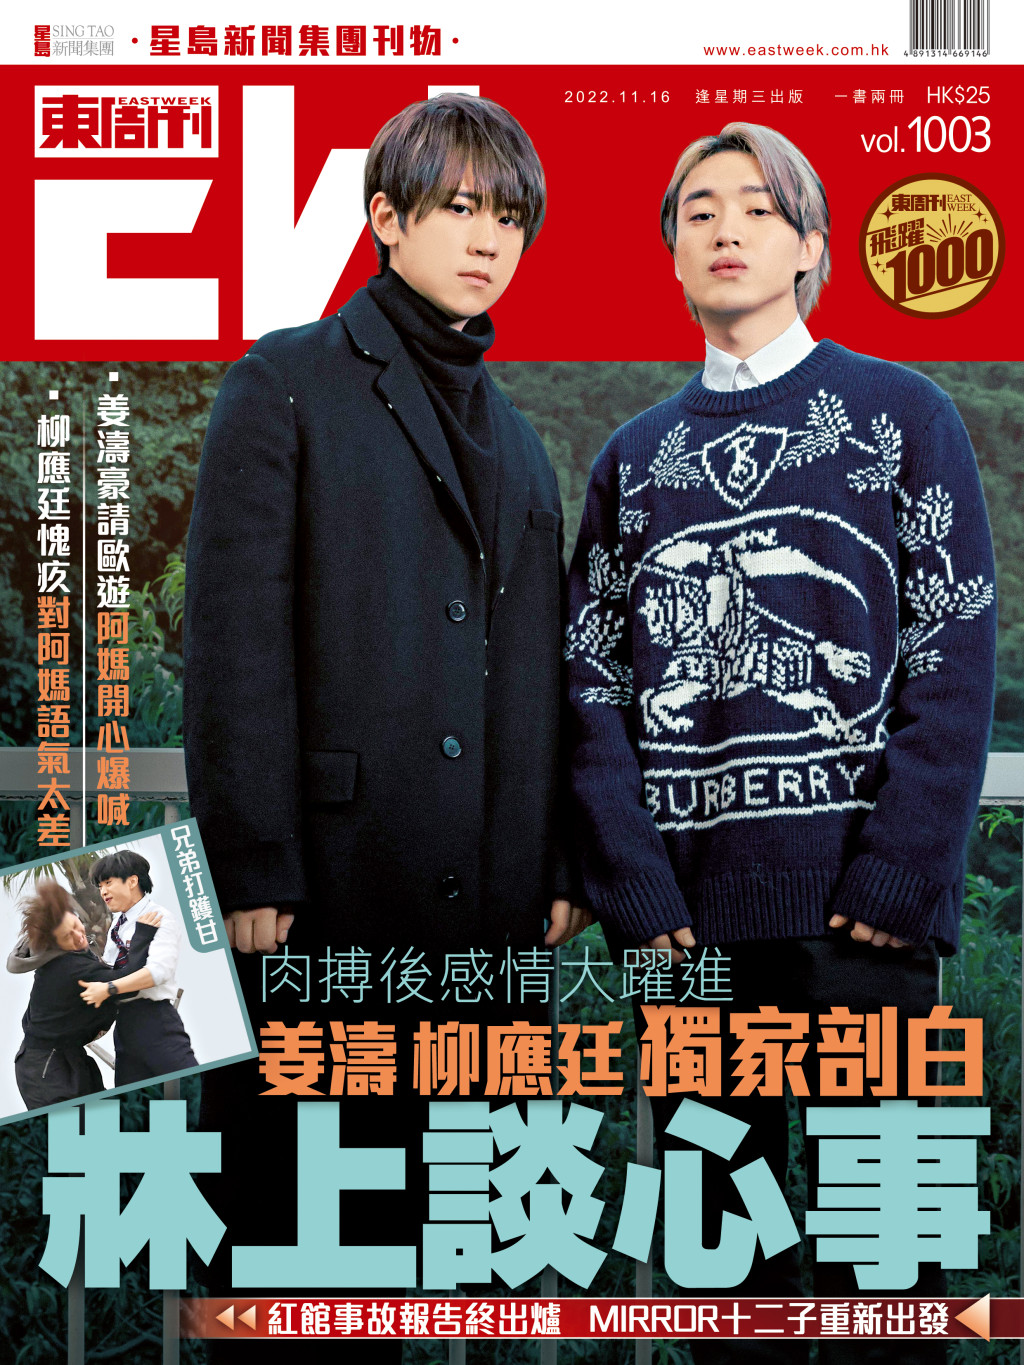 最新一期《东周刊》有姜涛、柳应廷独家剖白牀上谈心事。（《东周刊》图片）